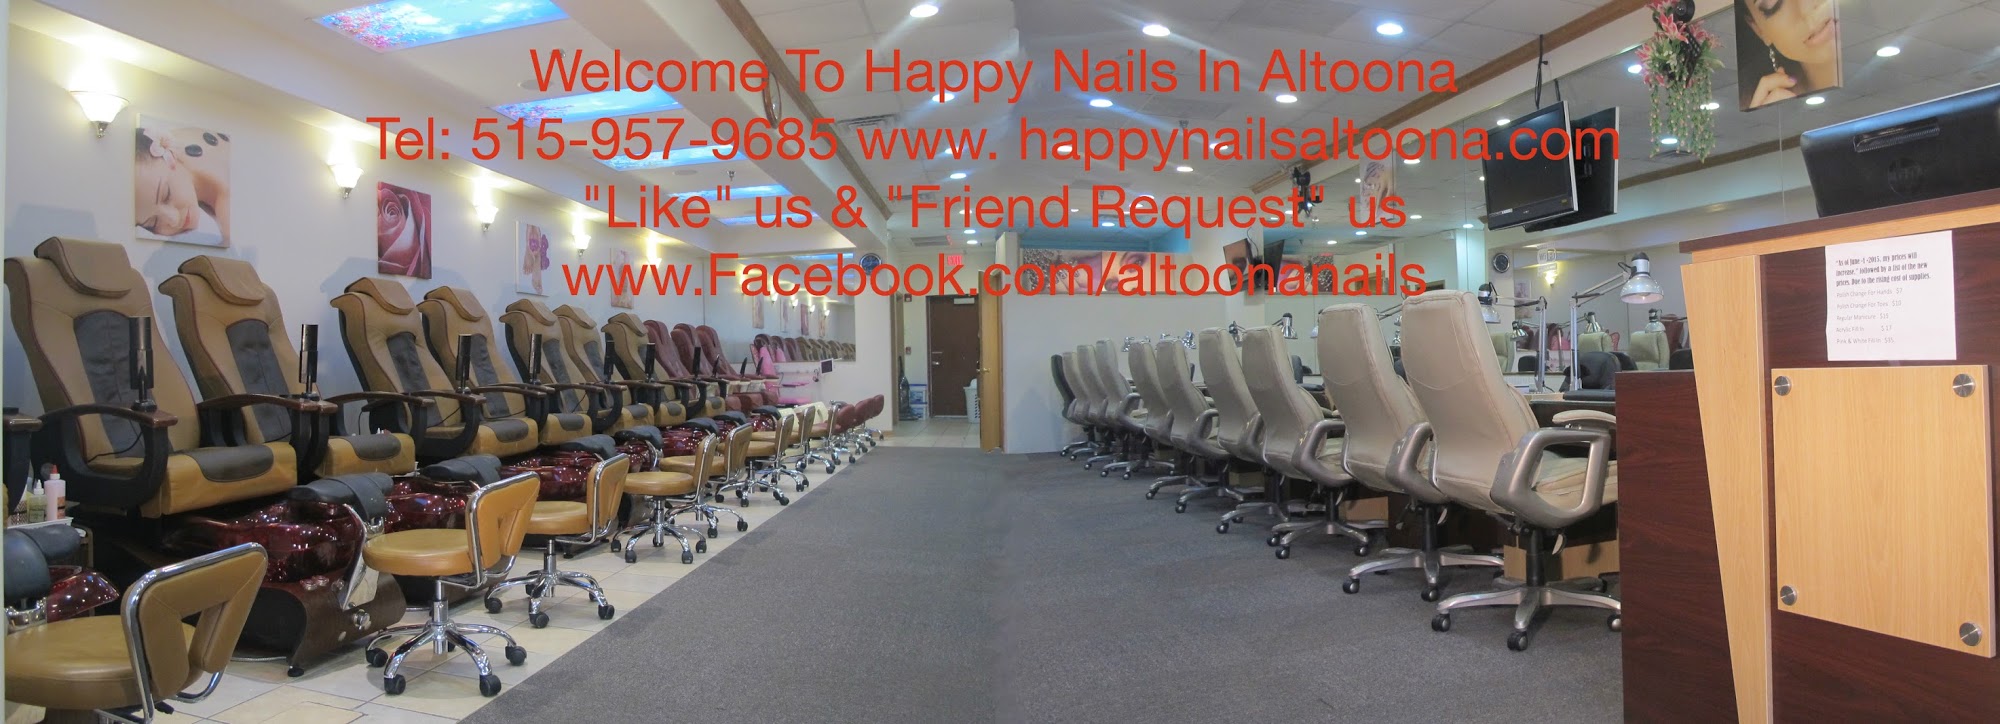 Happy Nails Altoona